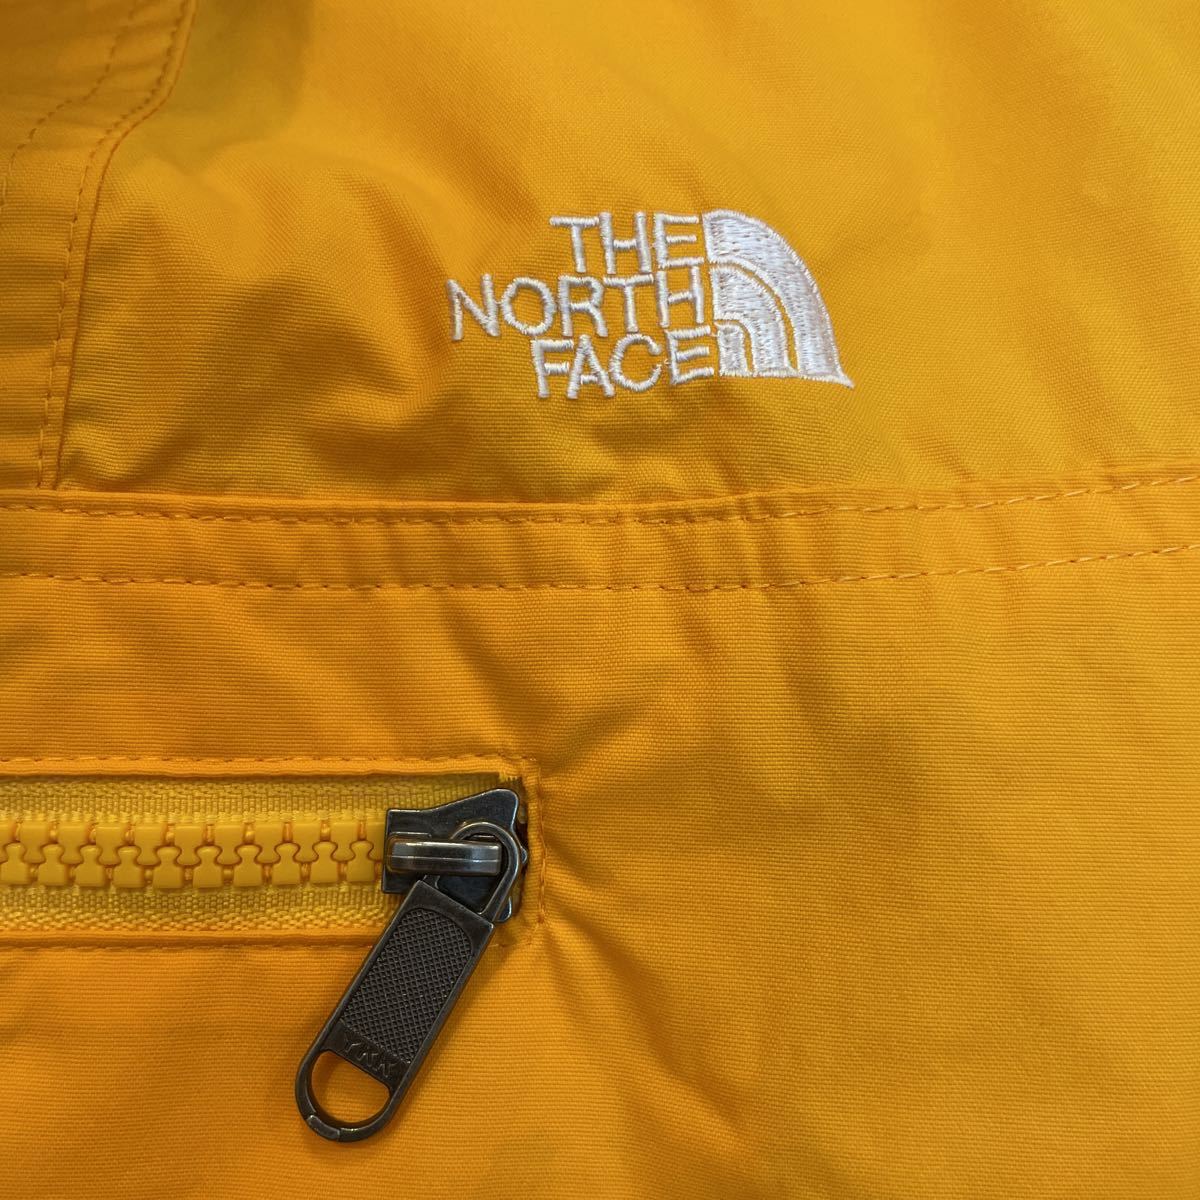 THE NORTH FACE ノースフェイス アノラックパーカー L イエロー 刺繍ロゴ 品番 NP-2312 プルオーバー メンズ アウトドアキャンプ